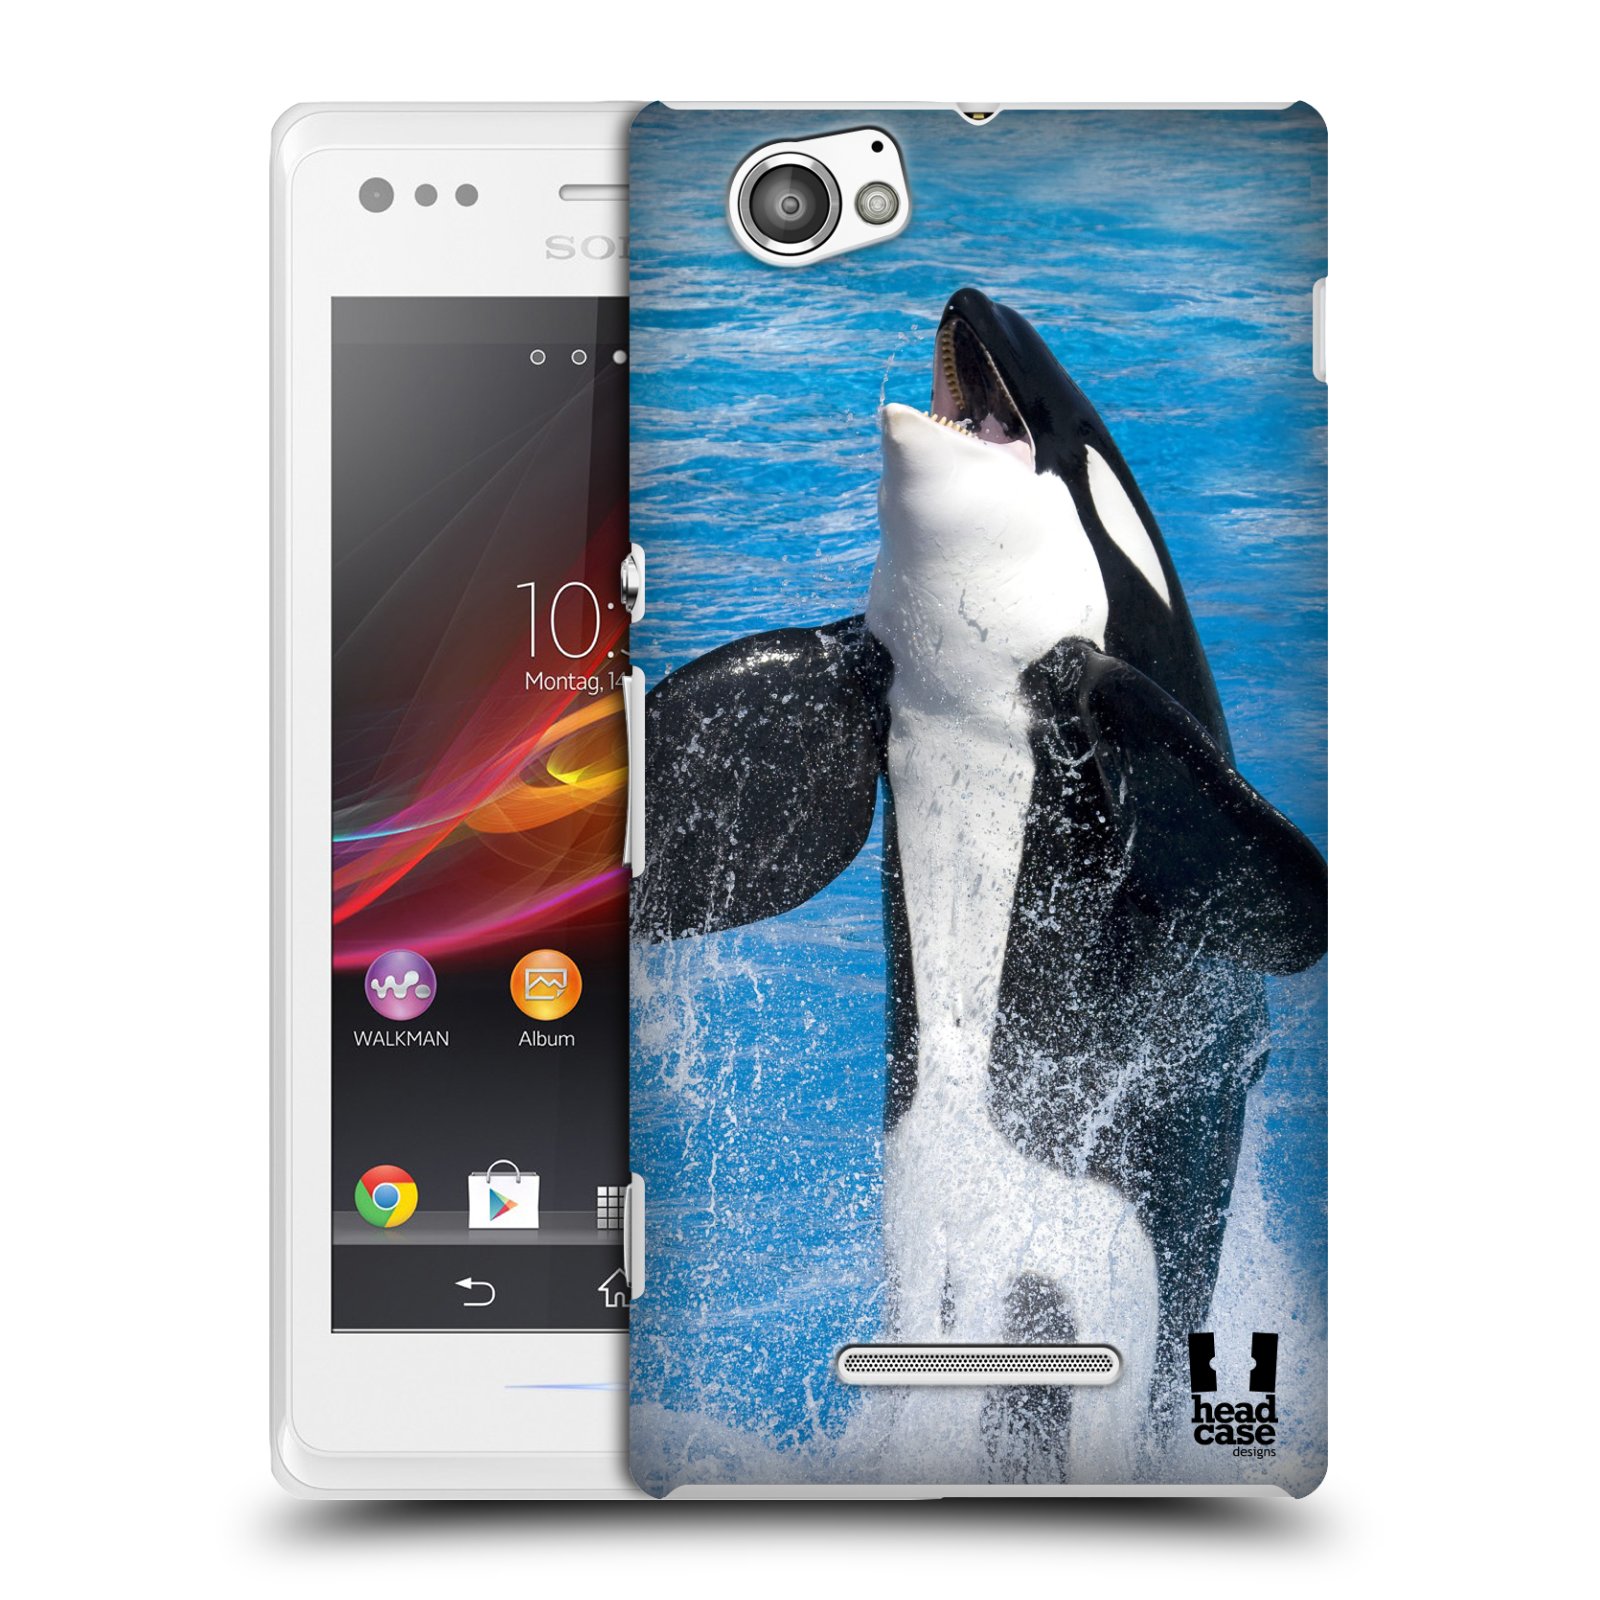 HEAD CASE plastový obal na mobil Sony Xperia M vzor slavná zvířata foto velryba